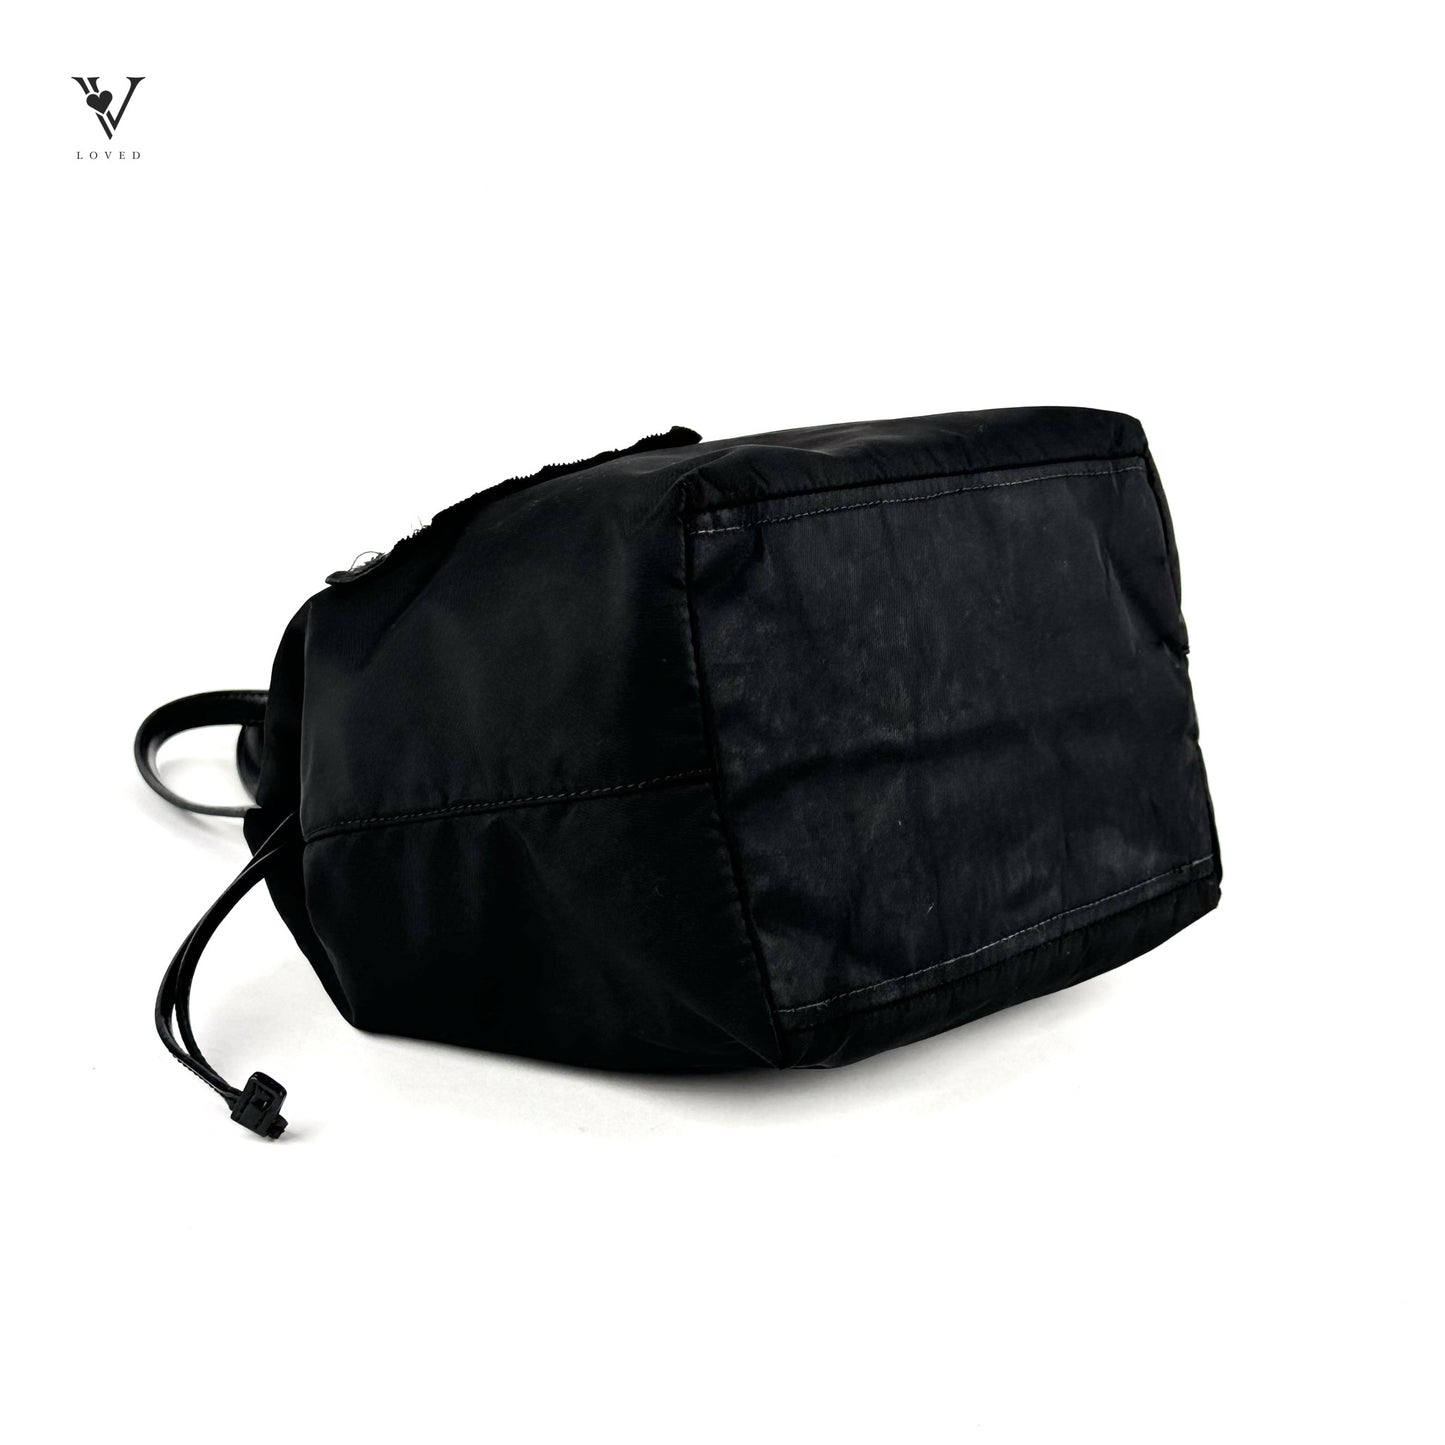 Nylon Handbag (Nero Triangle Embroidered Design)